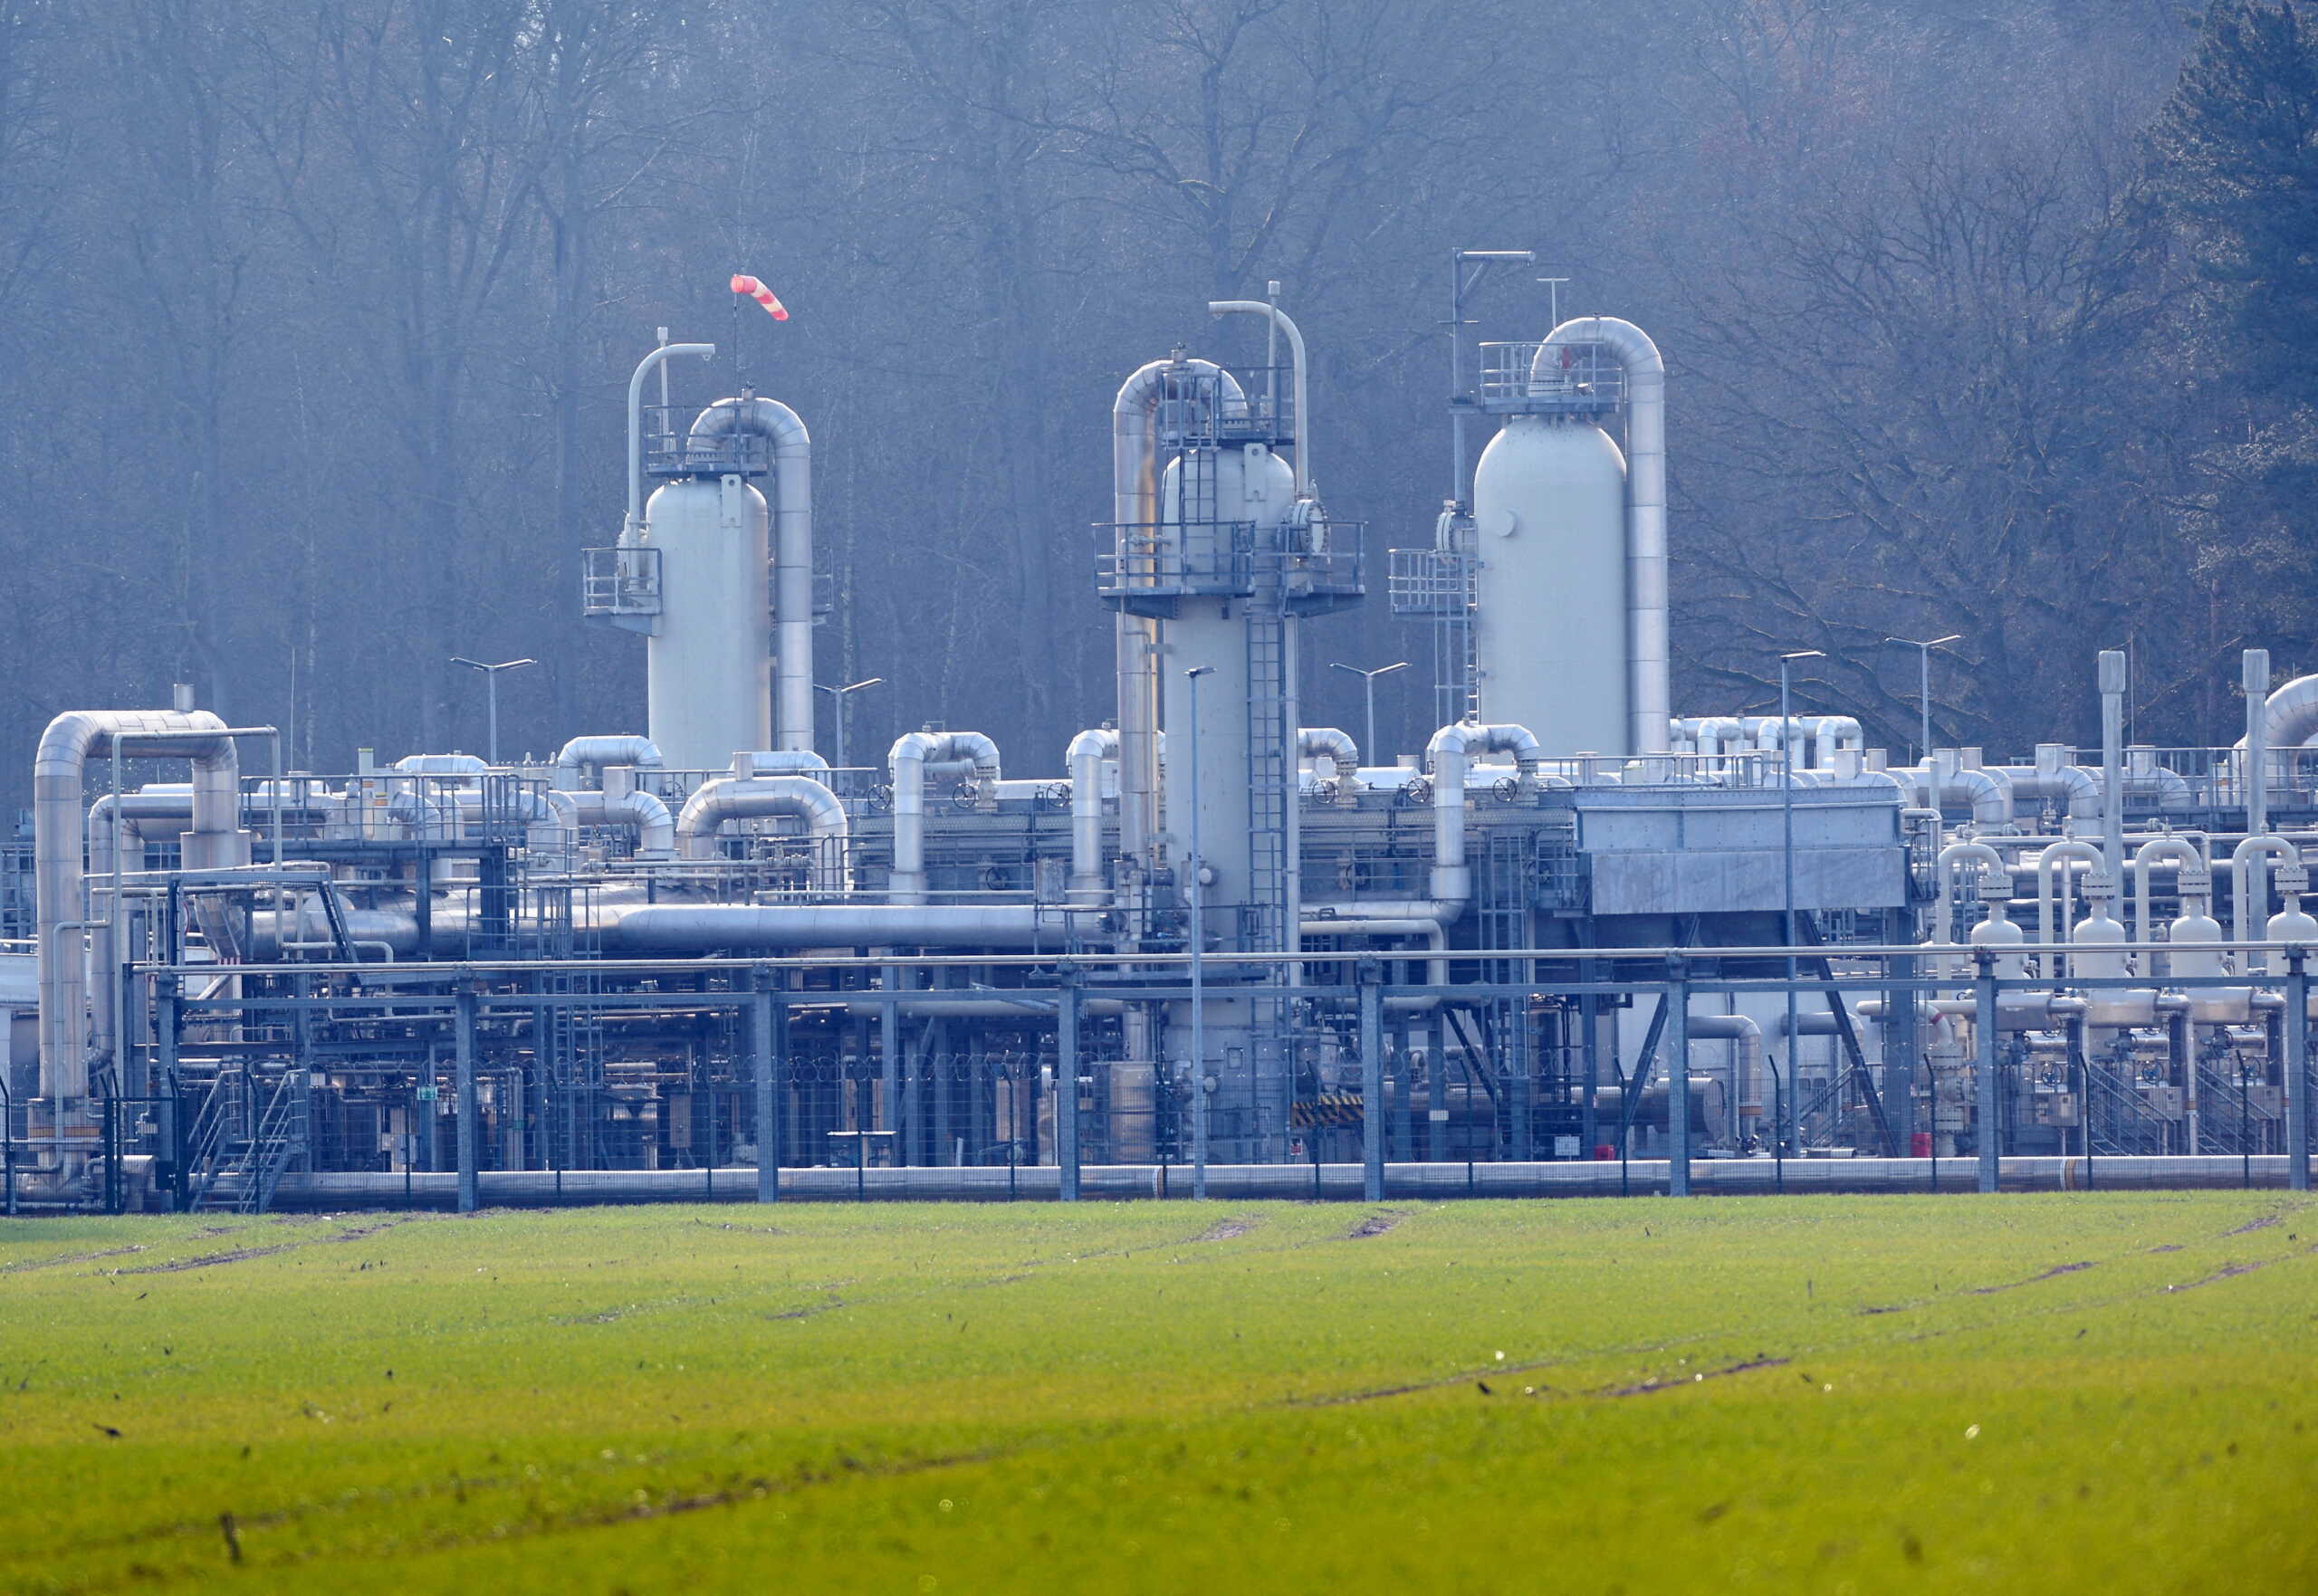 Φυσικό αέριο: «Παραθυράκι» της Κομισιόν για τις πληρωμές στην Gazprom